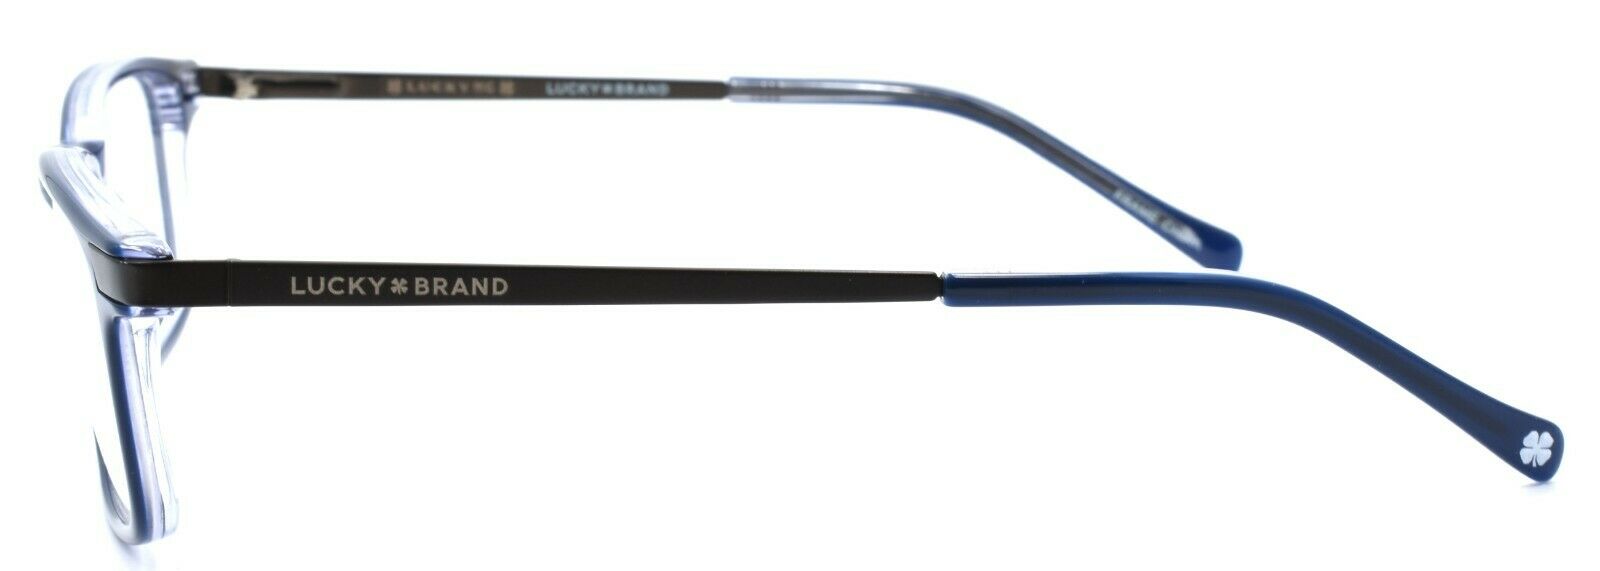 3-LUCKY BRAND D805 Kids Eyeglasses Frames 48-17-130 Blue-751286295351-IKSpecs